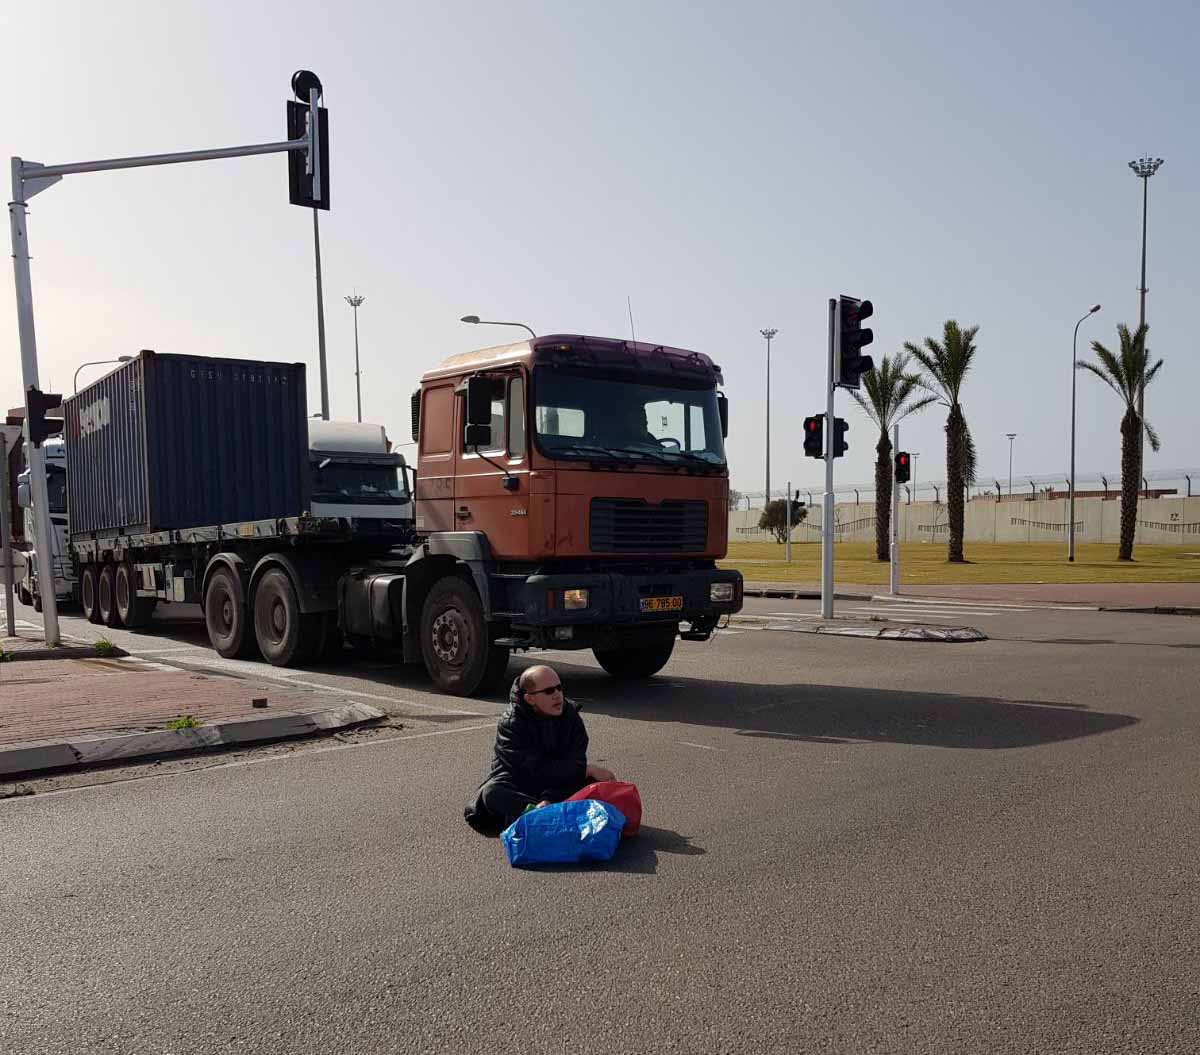 פעילי מאבק הנכים חוסמים את הכניסה לנמל אשדוד, 22 בינואר 2018 (צילום: מטה מאבק הנכים)